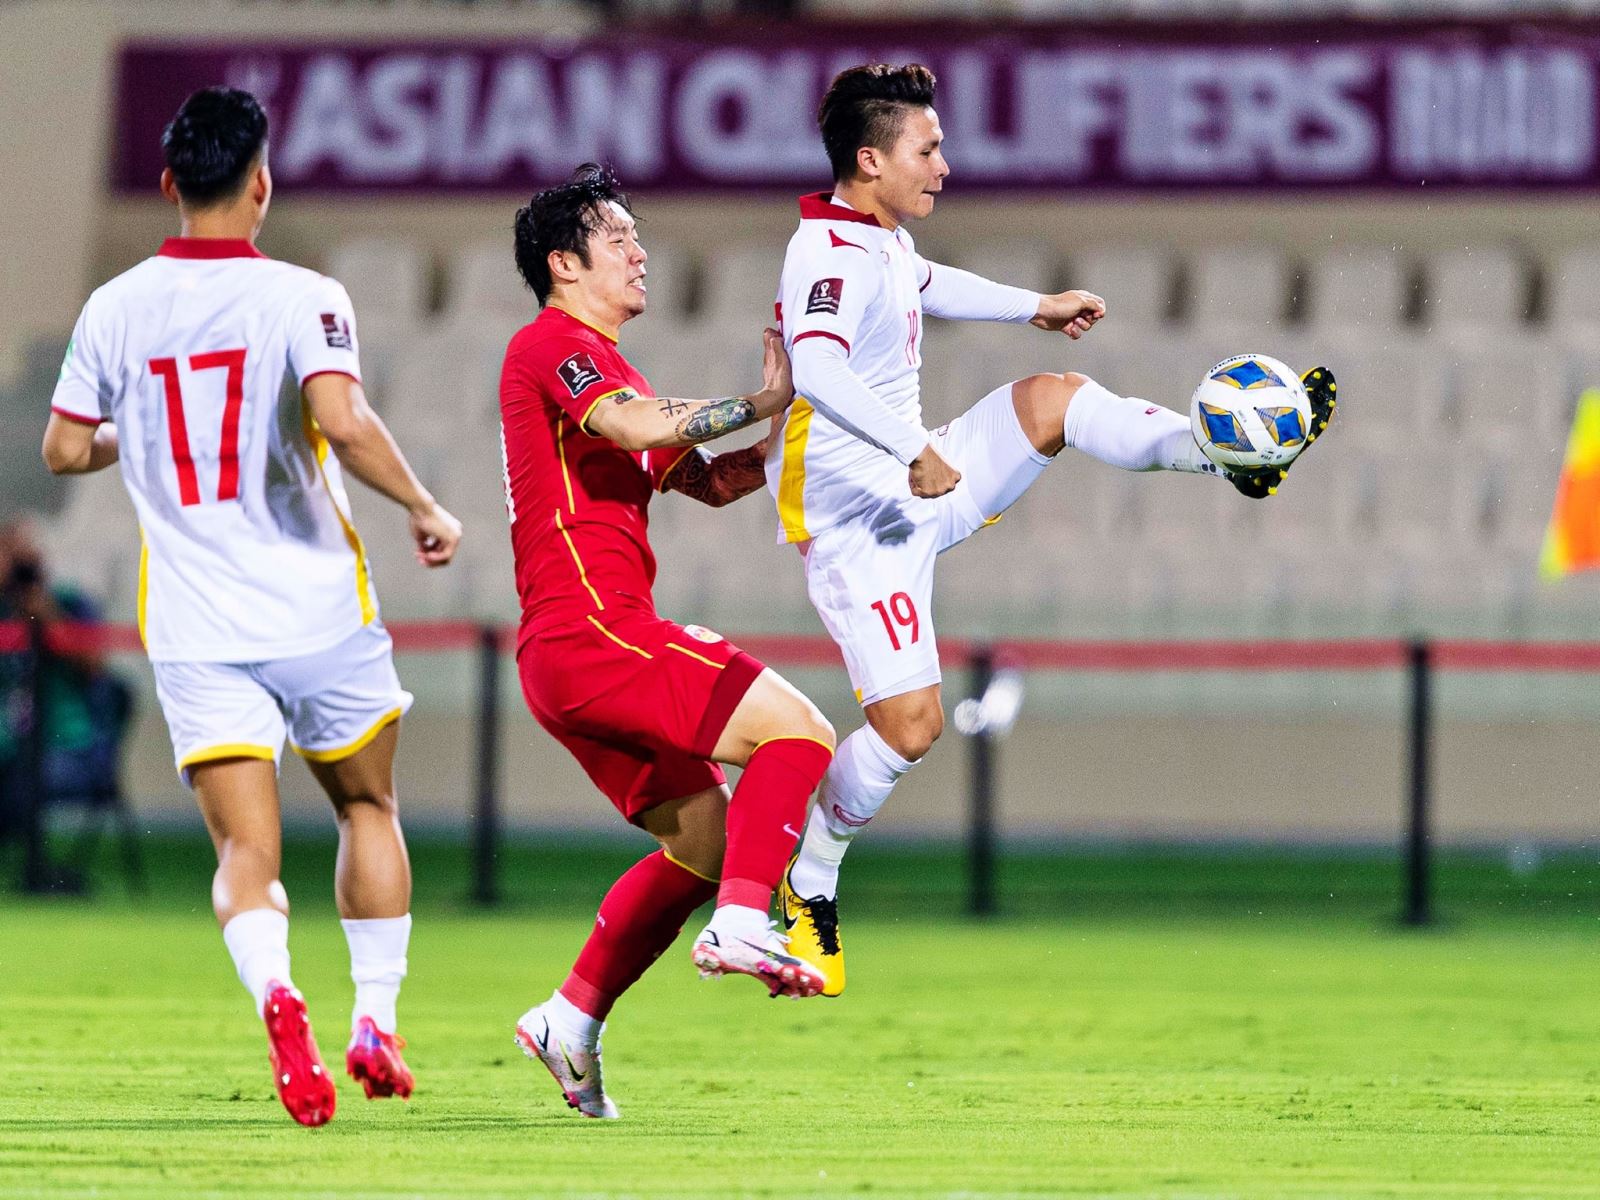 Giao hữu, đội tuyển Việt Nam 0-0 Trung Quốc: Trận đấu bước ngoặt của ông Troussier - Ảnh 2.